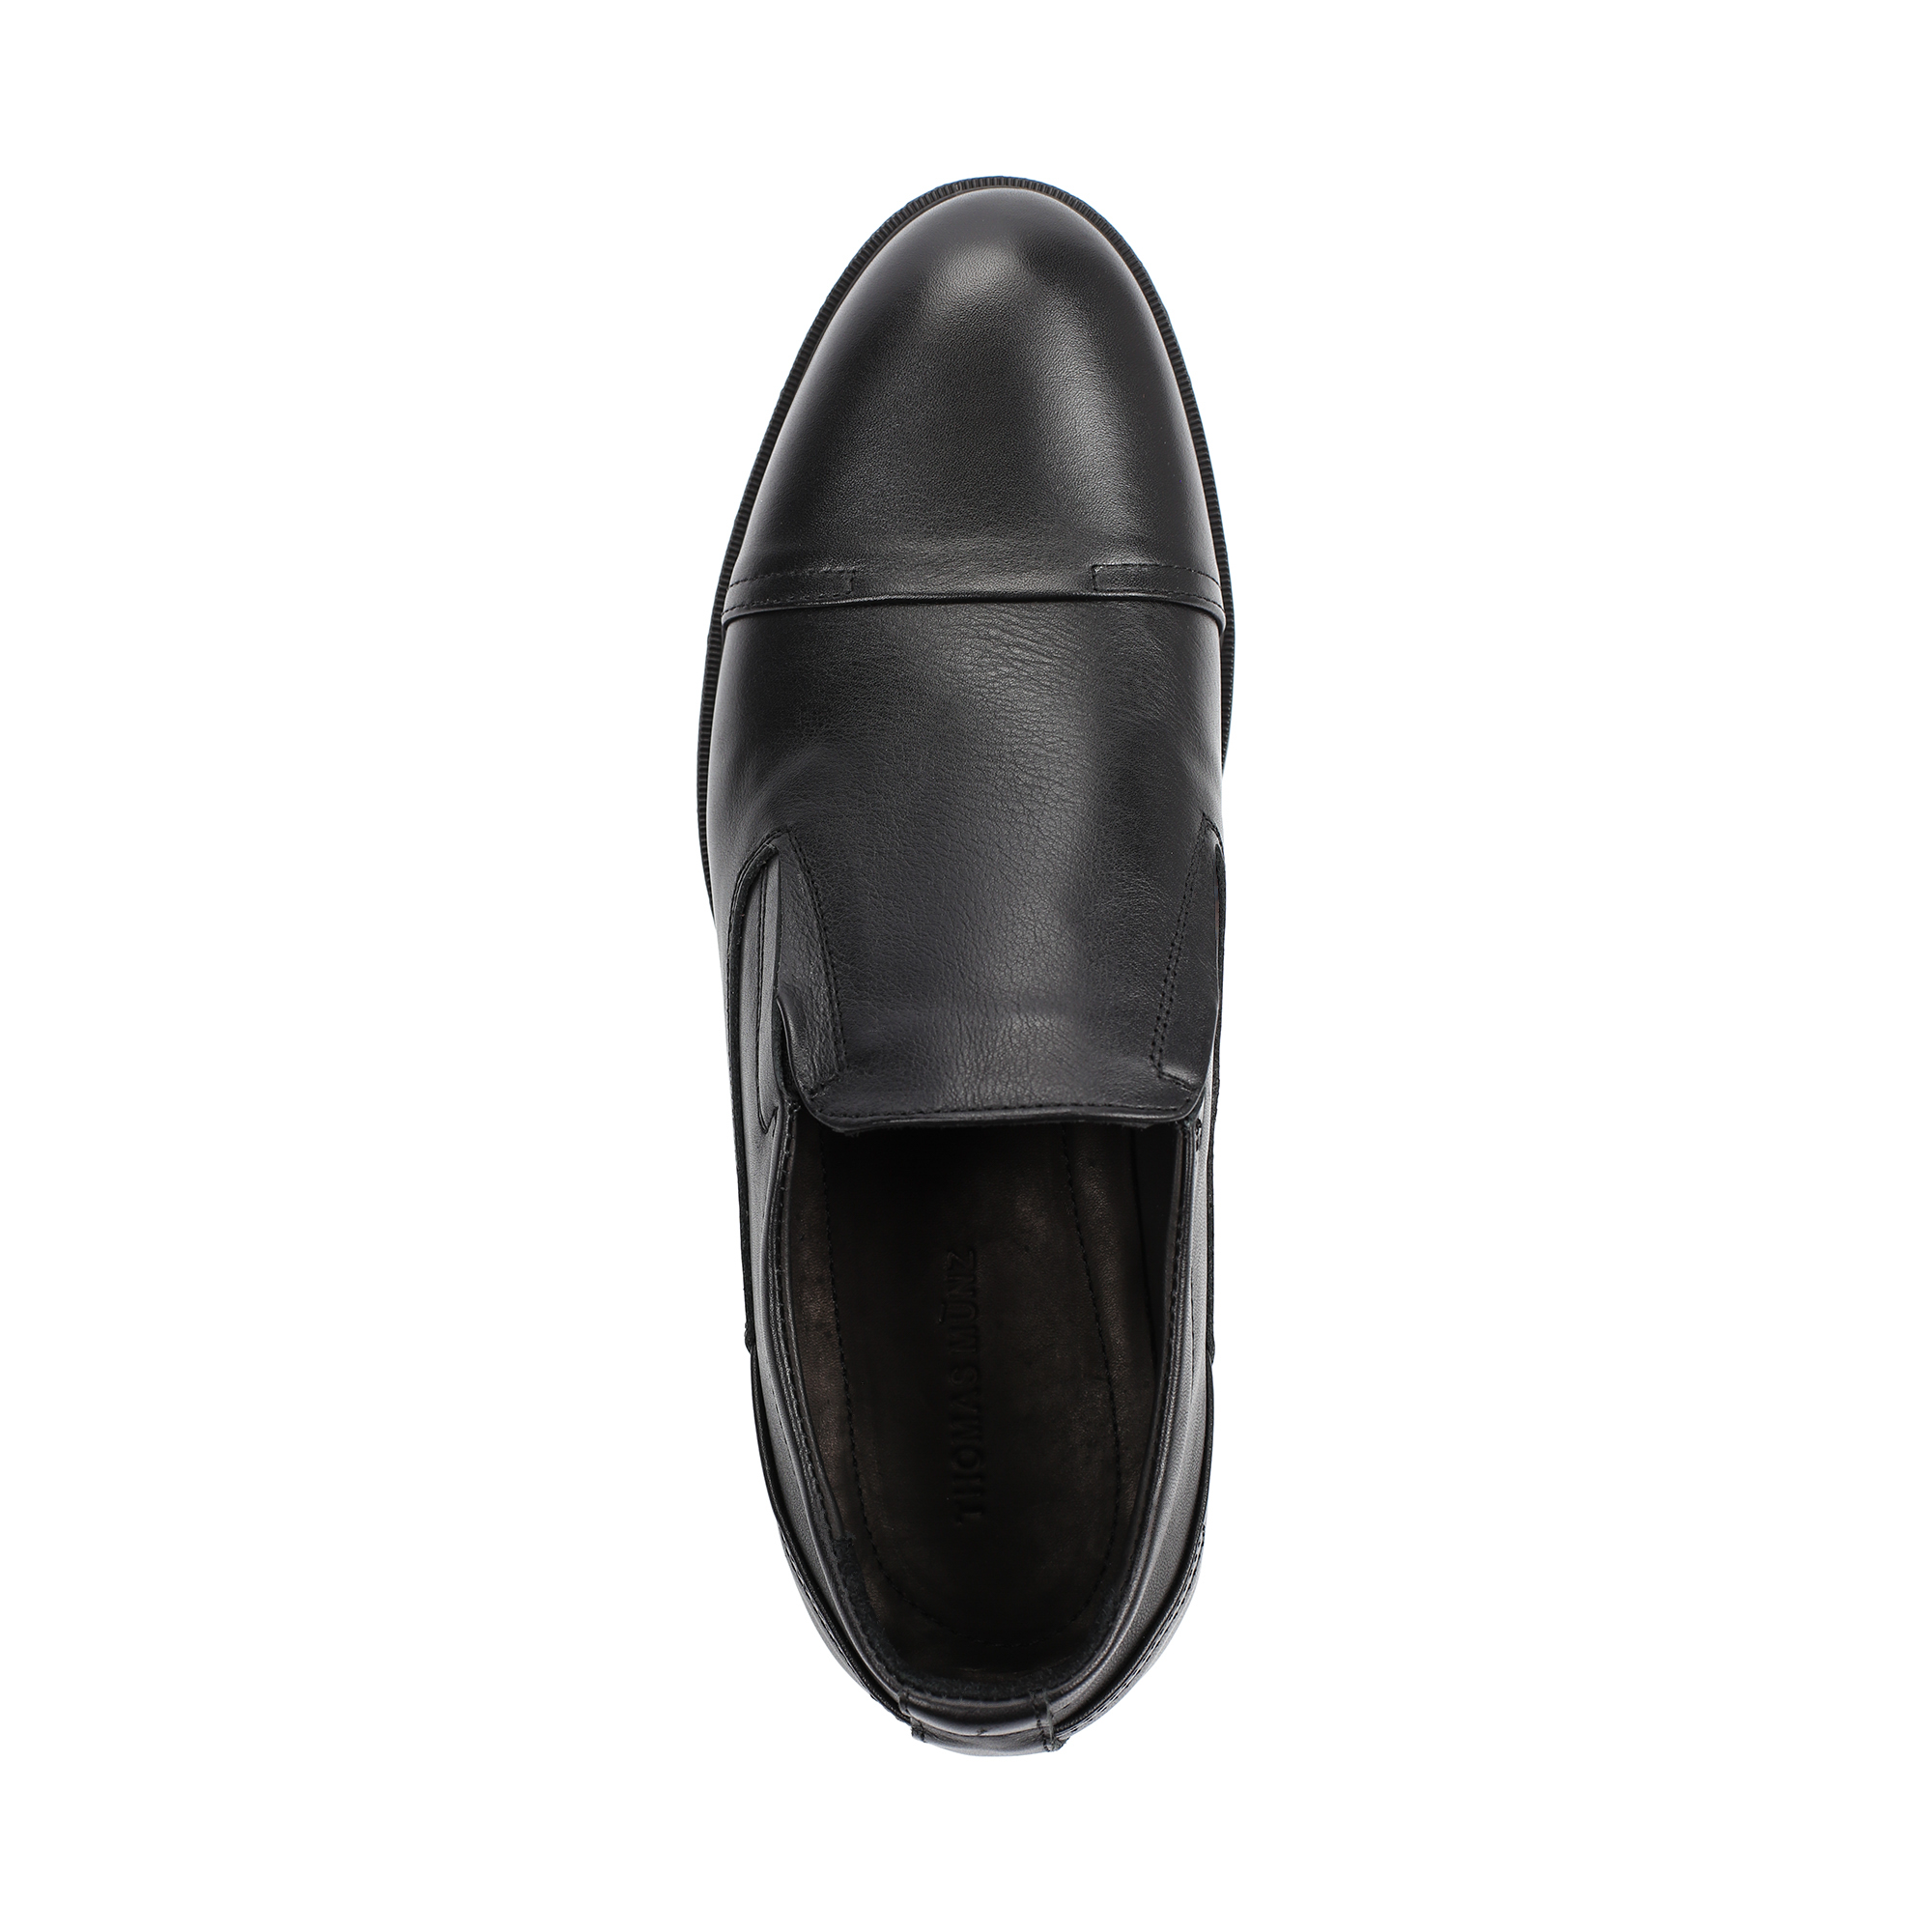 Туфли/полуботинки Thomas Munz 335-131A-1102, цвет черный, размер 39 - фото 5